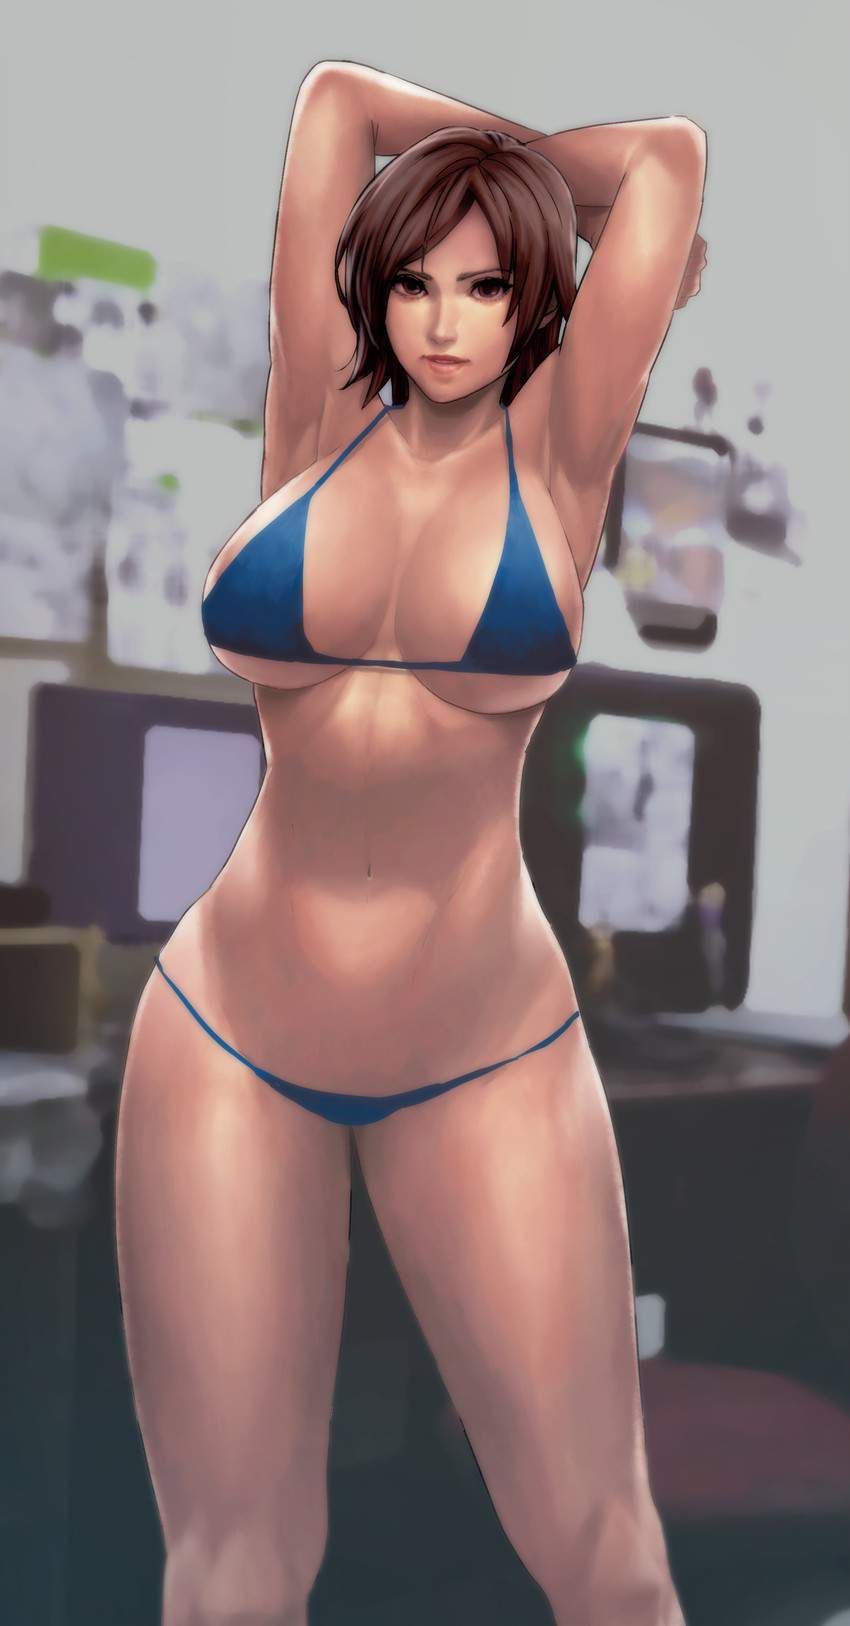 【Tekken】An erotic image of Kazama Asuka 11